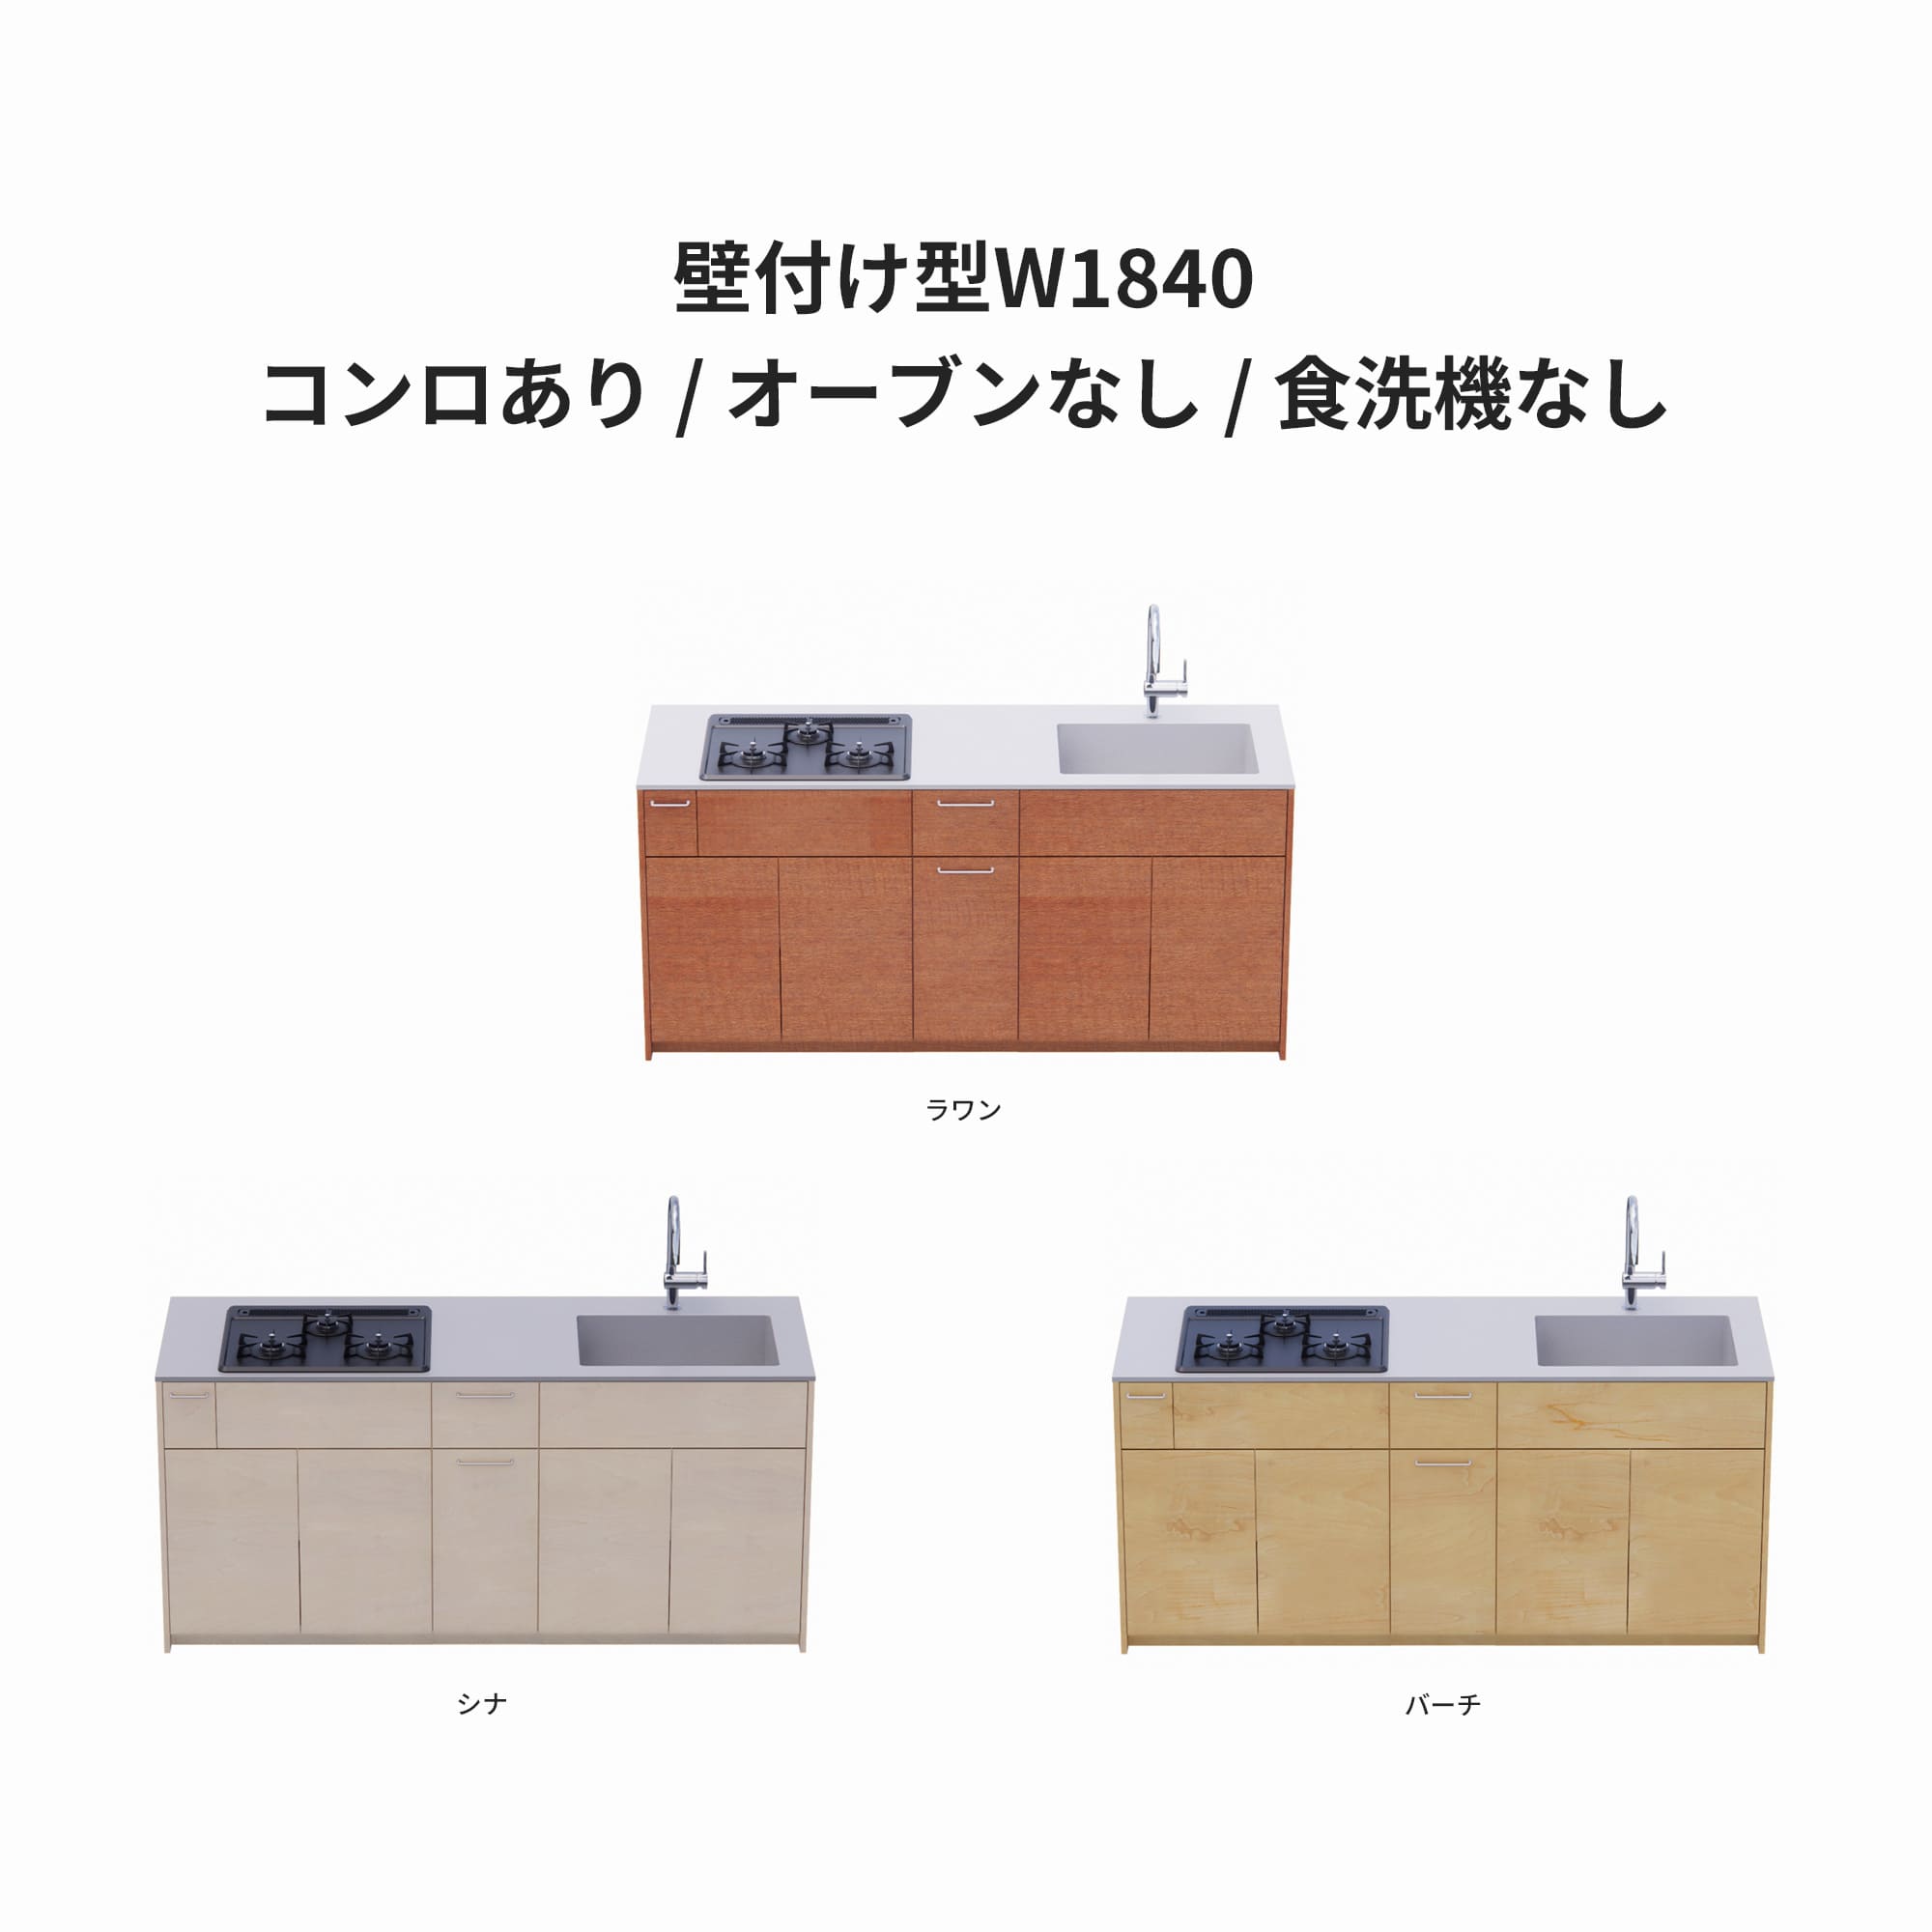 木製システムキッチン 壁付け型 W1840・コンロあり / オーブンなし / 食洗機なし KB-KC022-11-G183 ラワン・シナ・バーチが選択できます